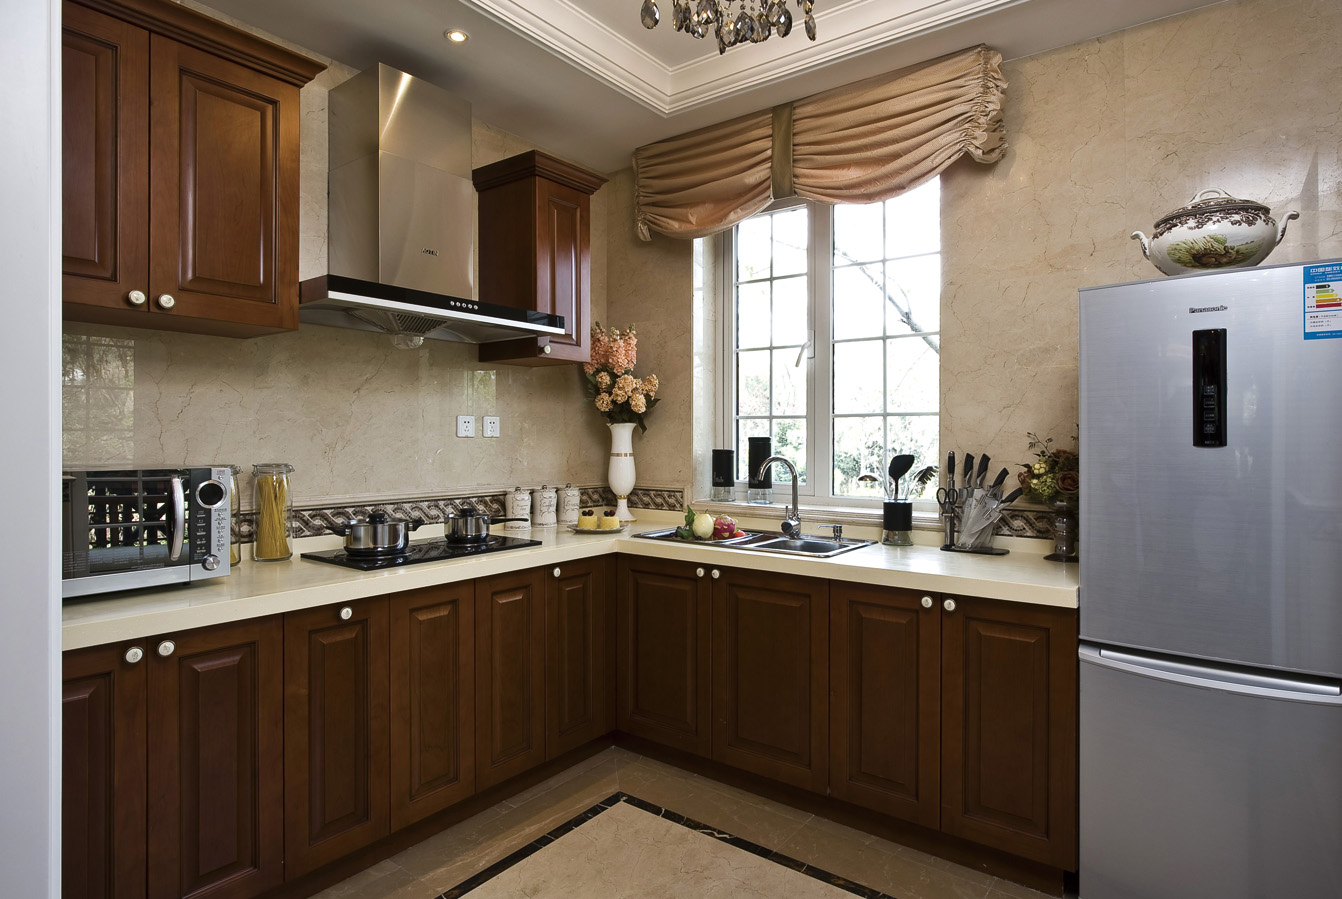 新古典美式风格别墅厨房装修效果图